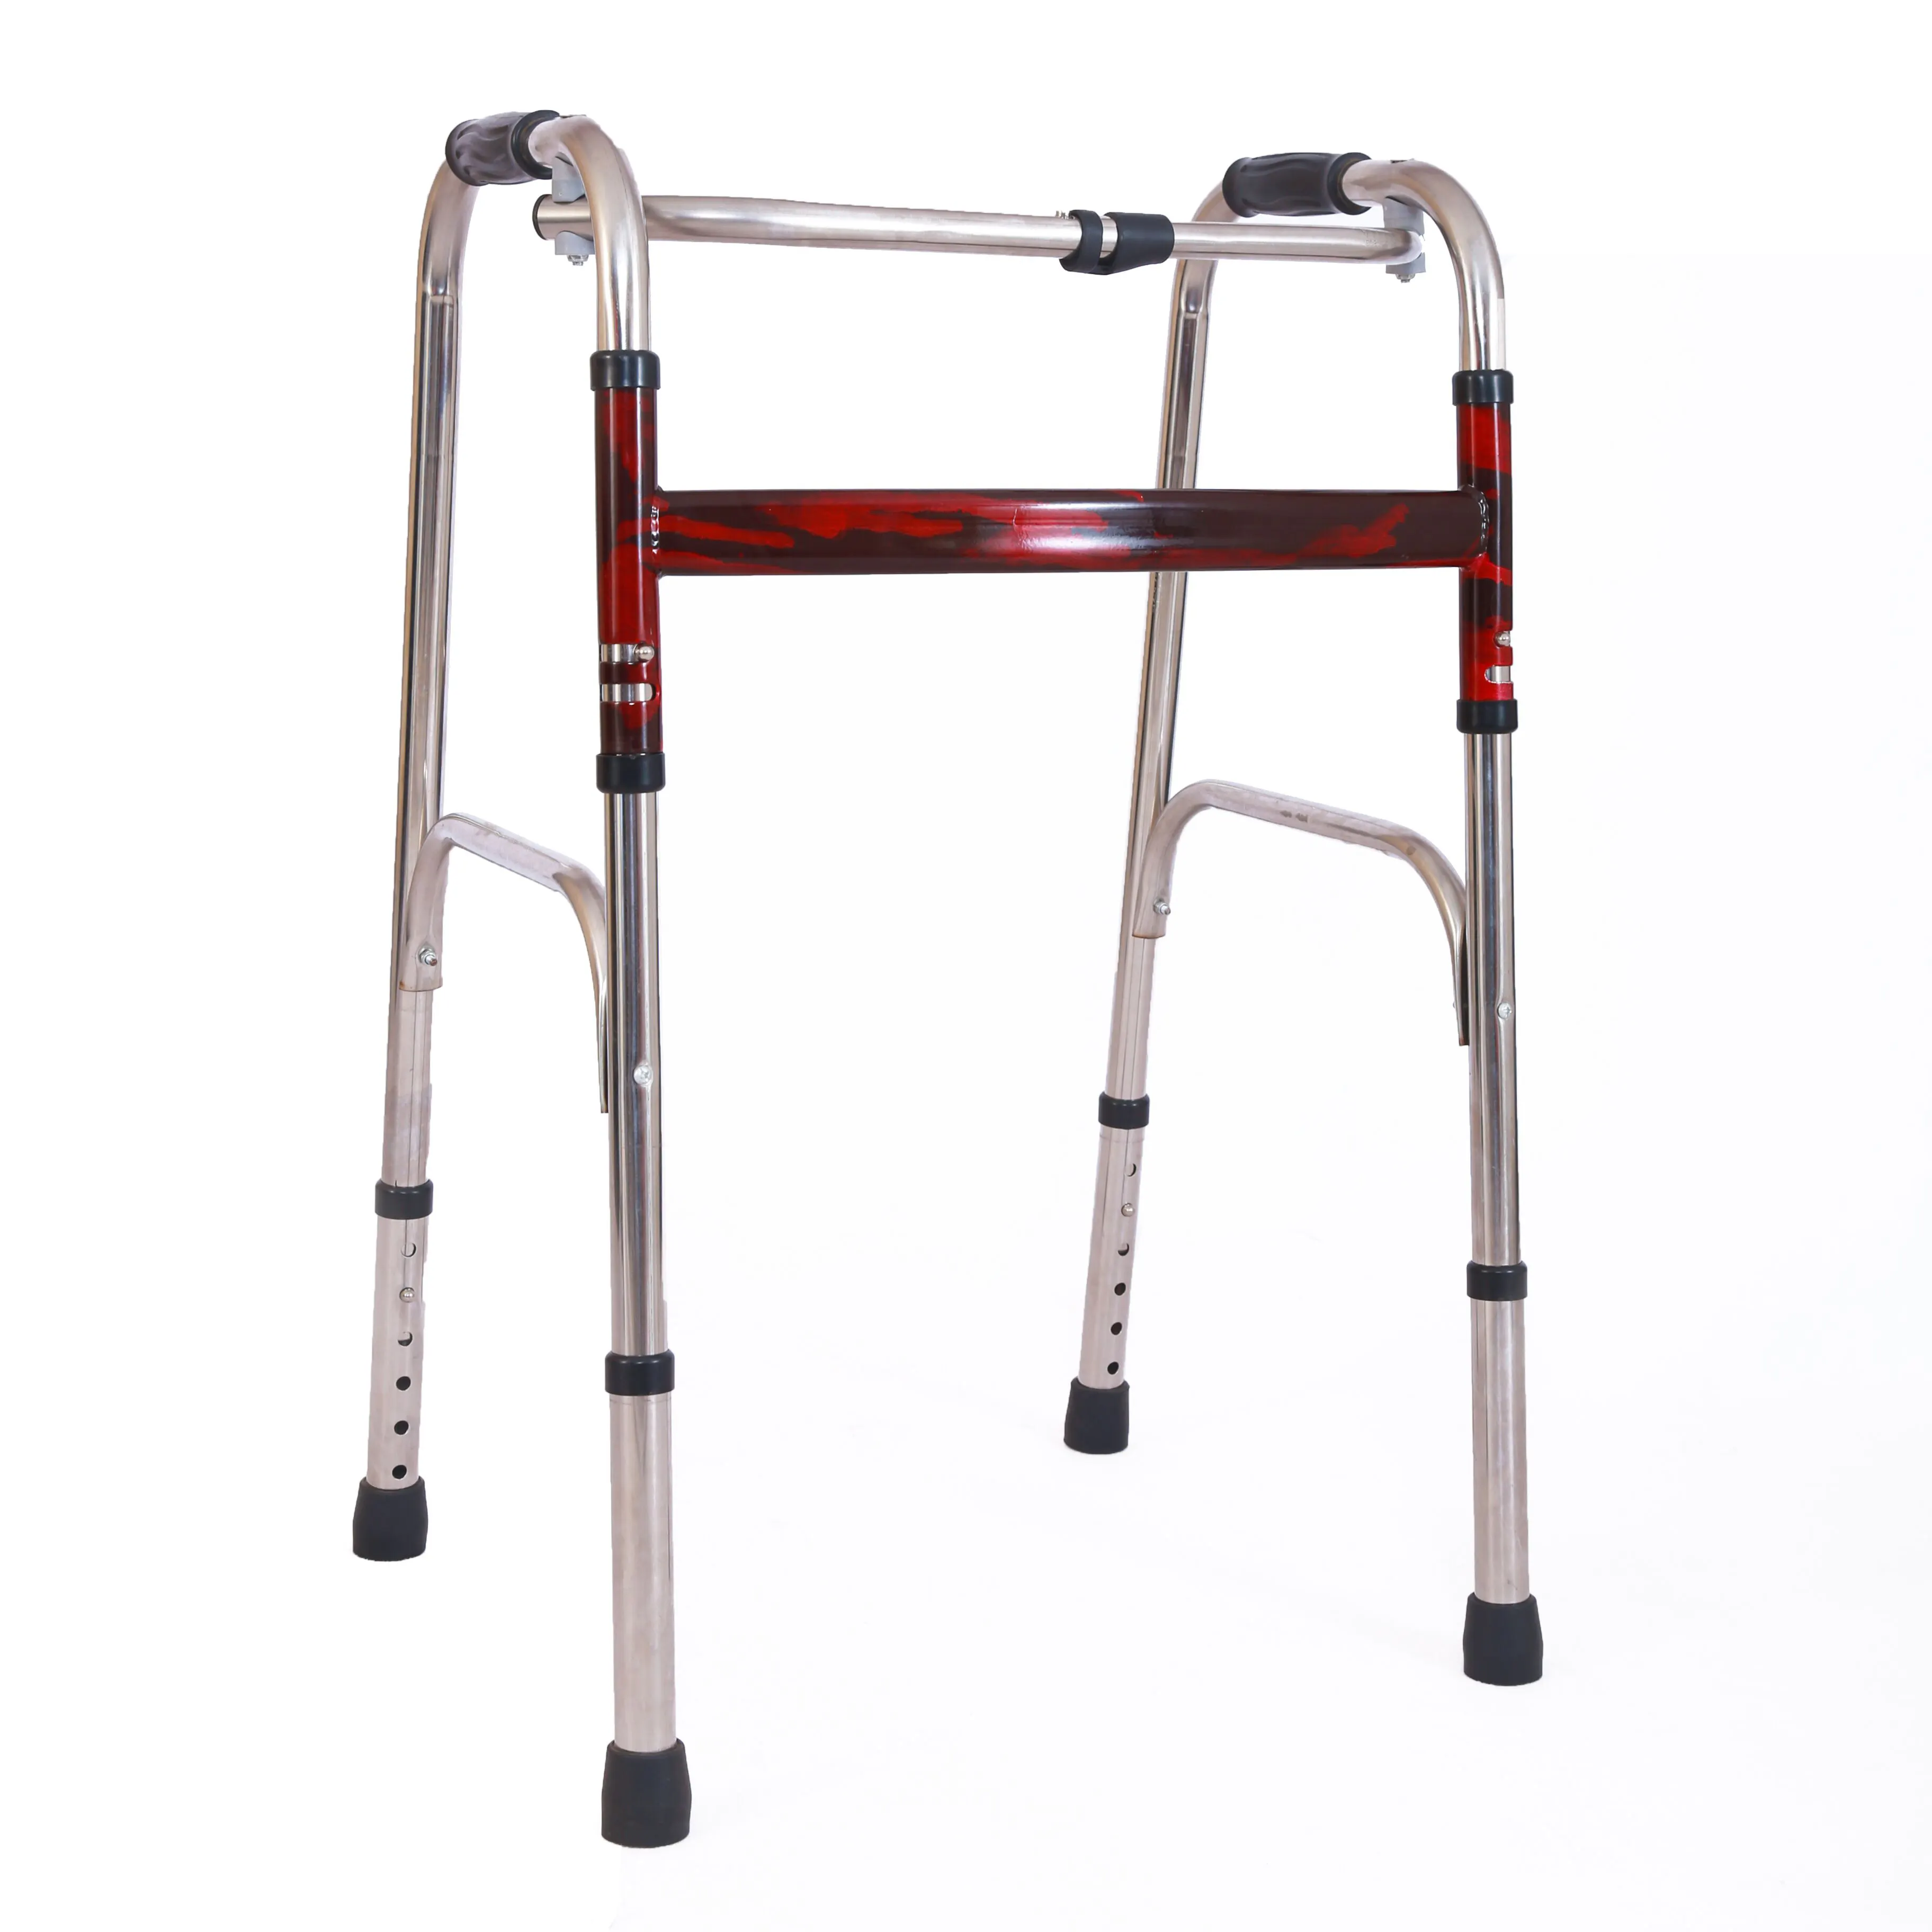 Runde OEM Service-andadores plegables de colores y ayuda para caminar para ancianos